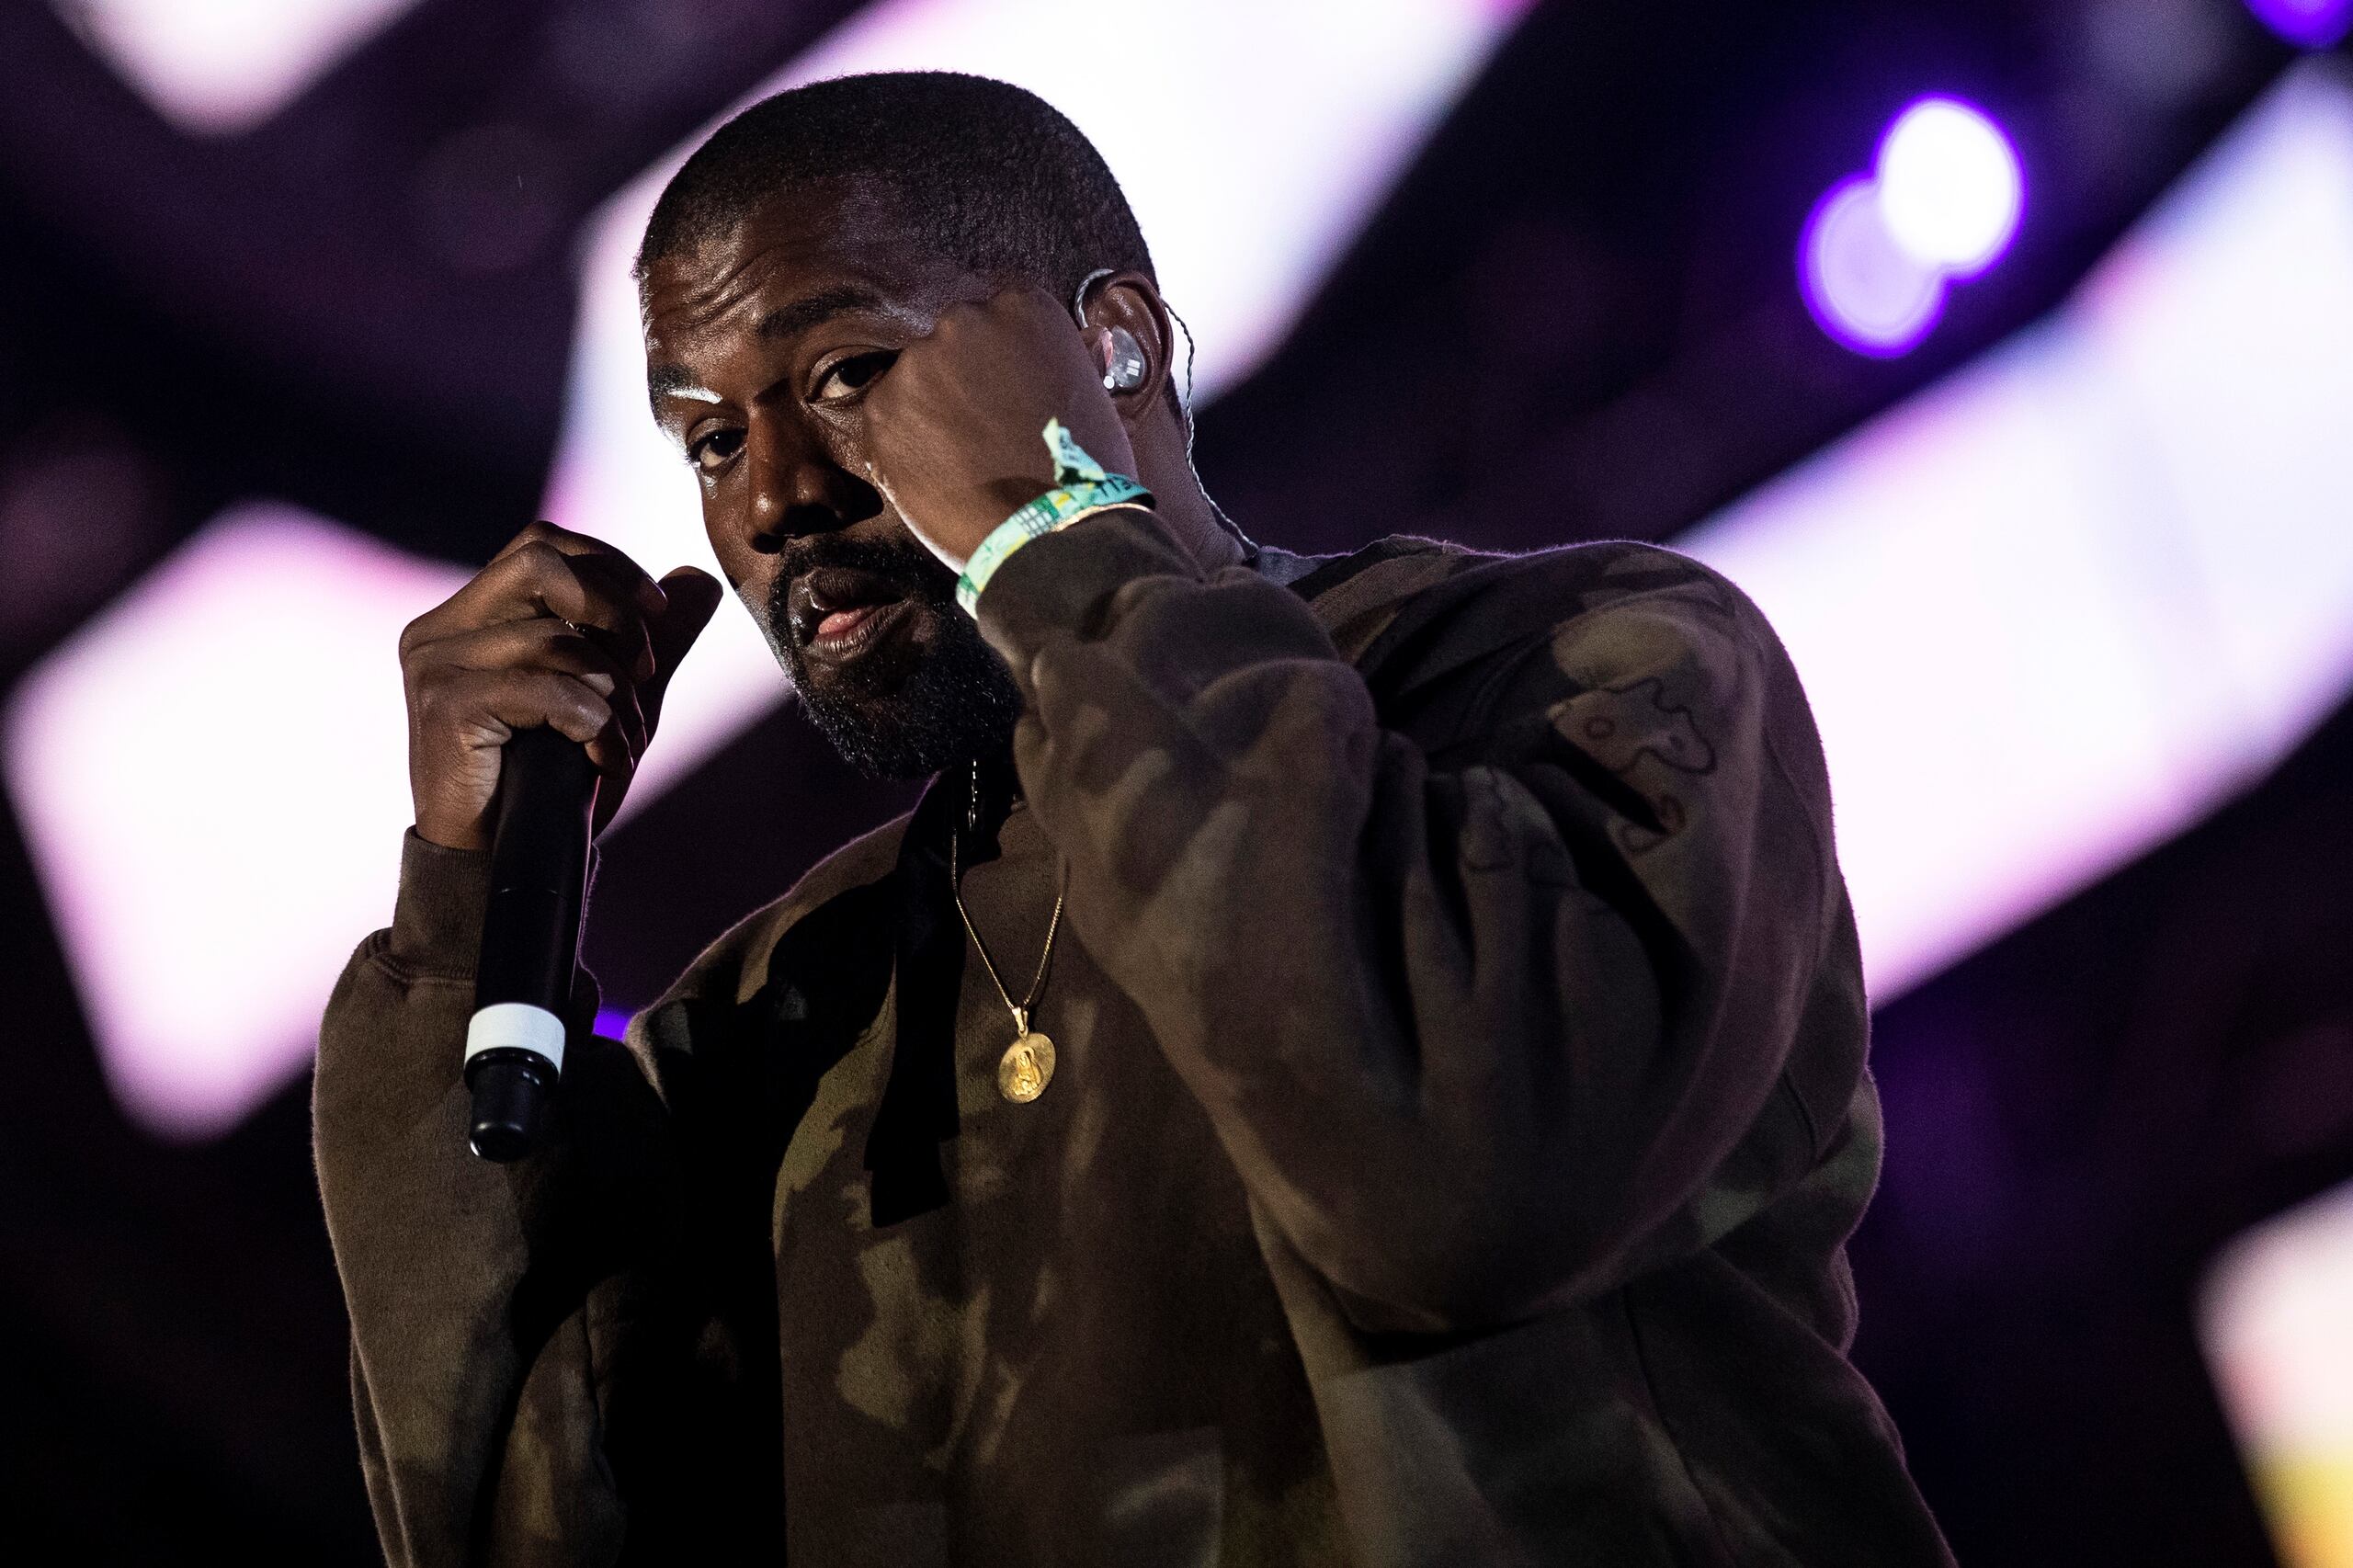 El rapero estadounidense Kanye West sigue siendo eje de la polémica con sus mensajes en las redes sociales.